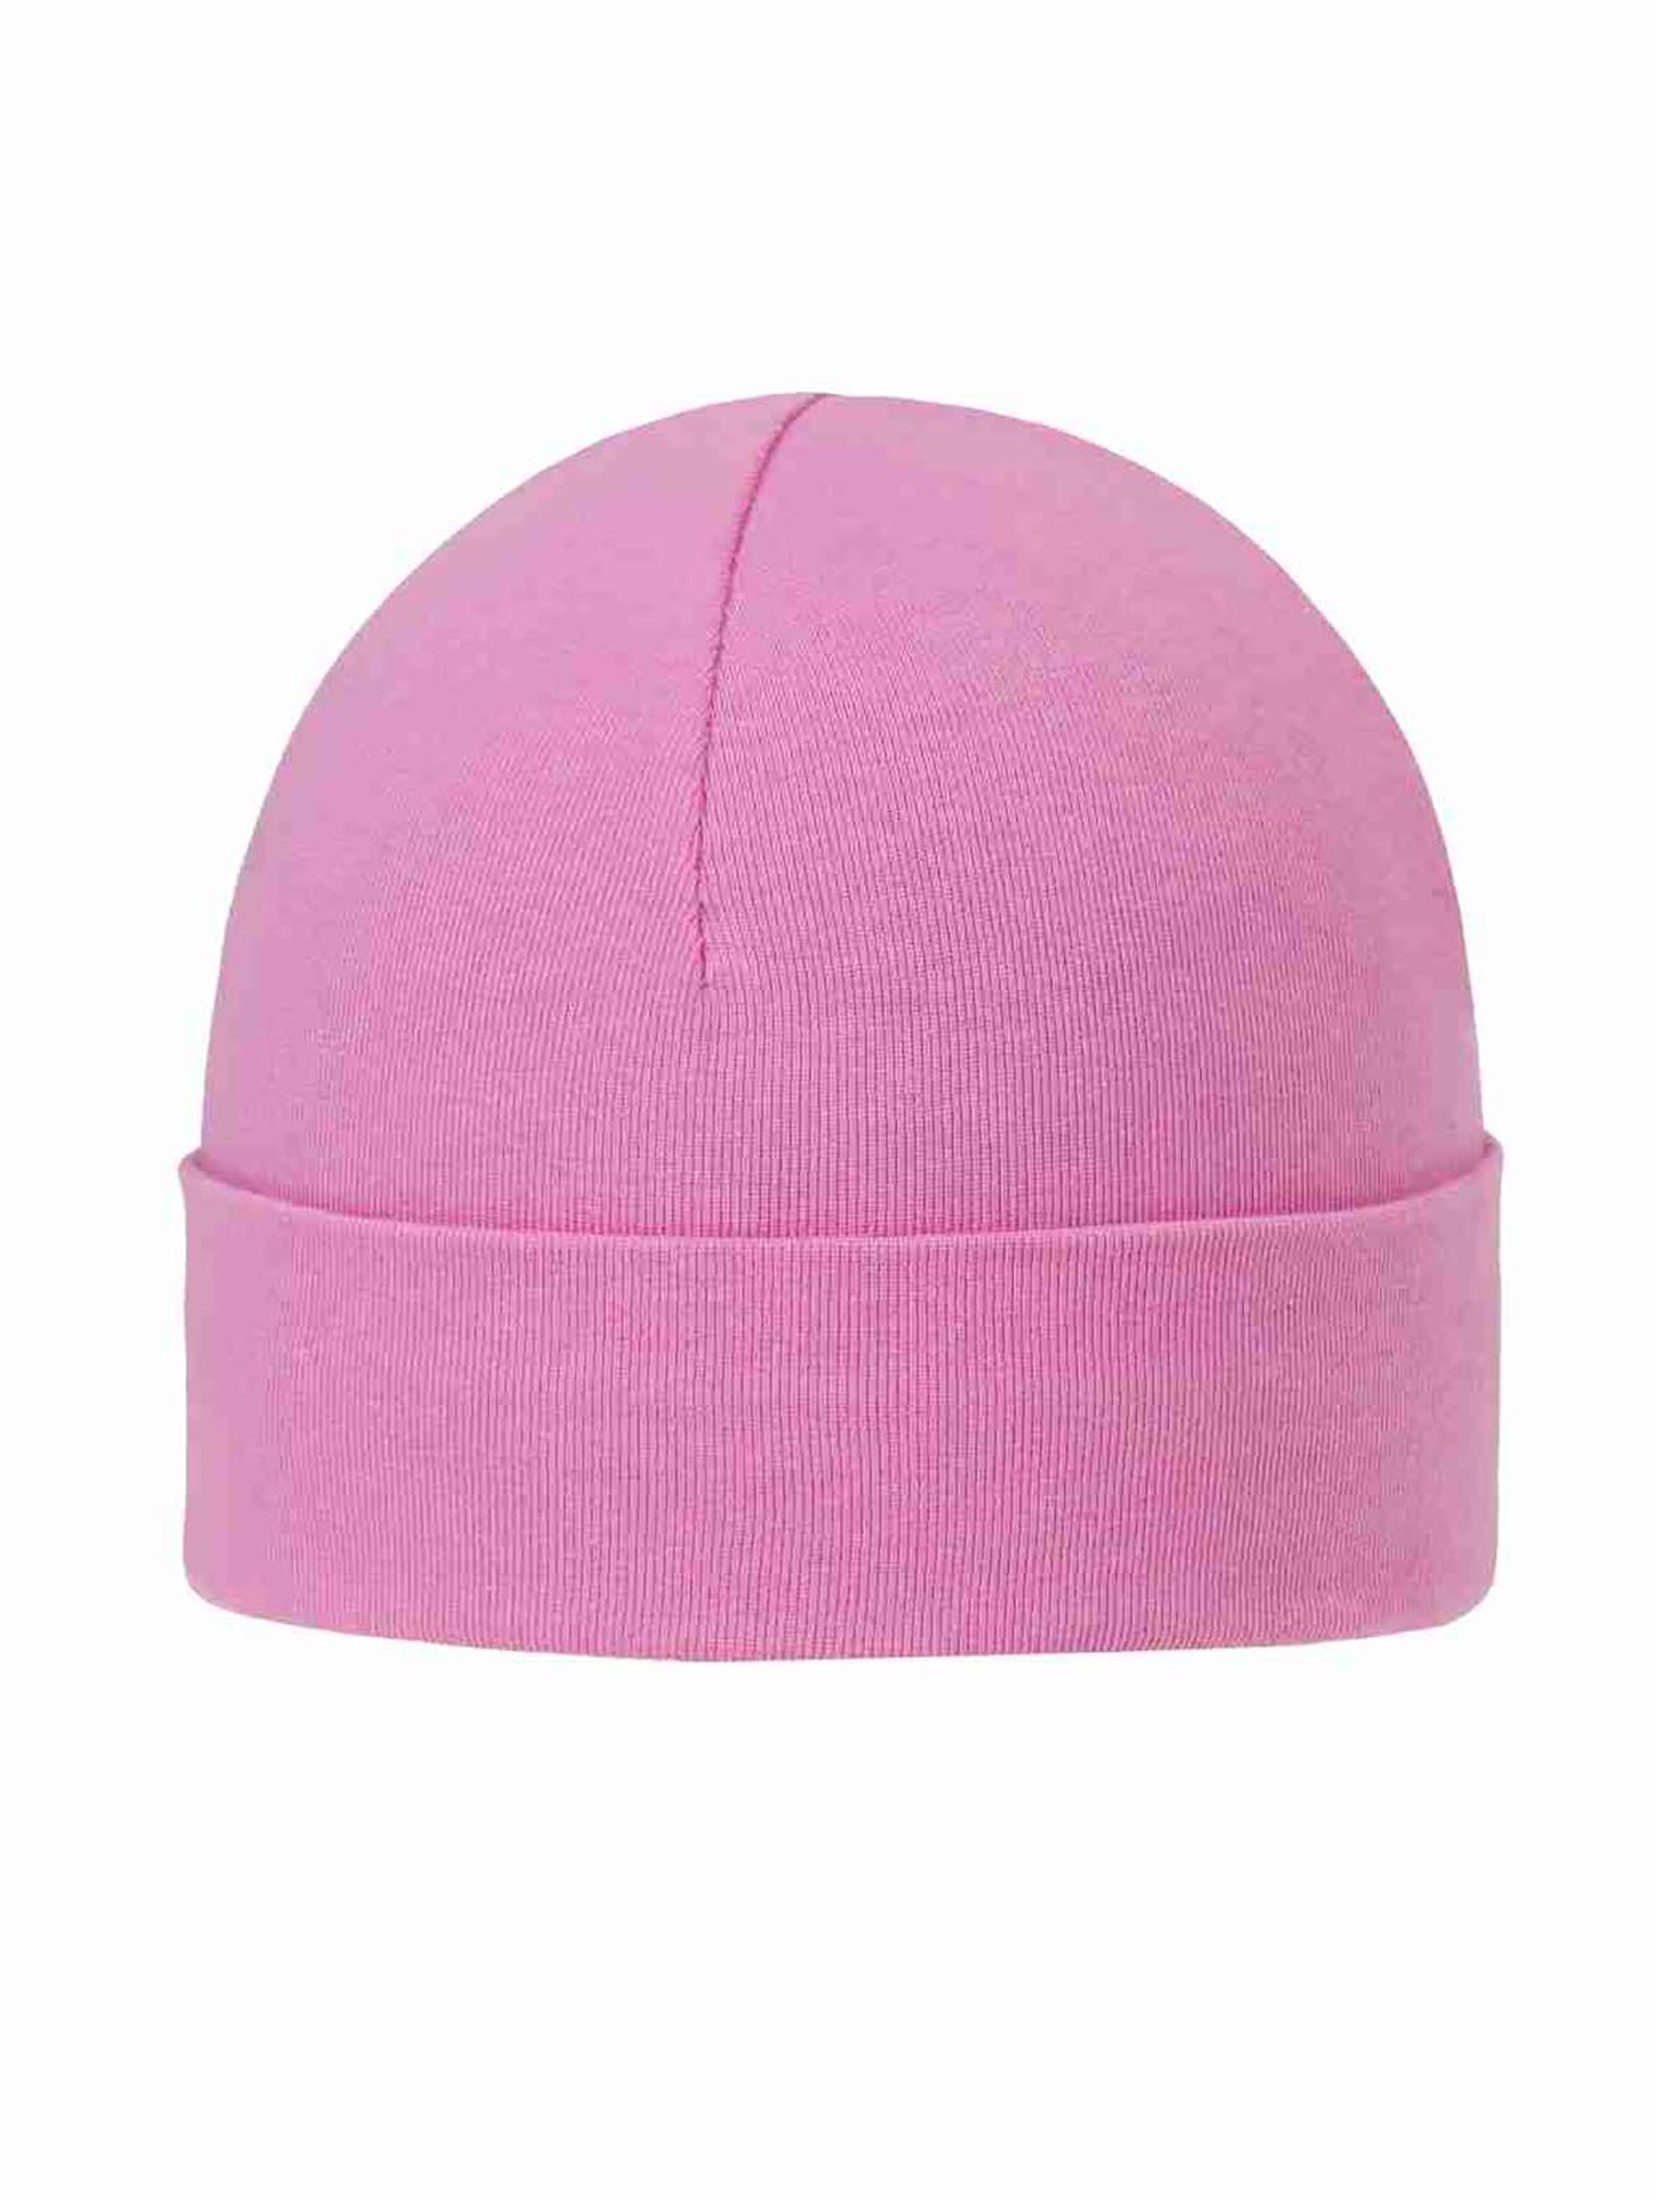 Różowa czapka niemowlęca wiosenna